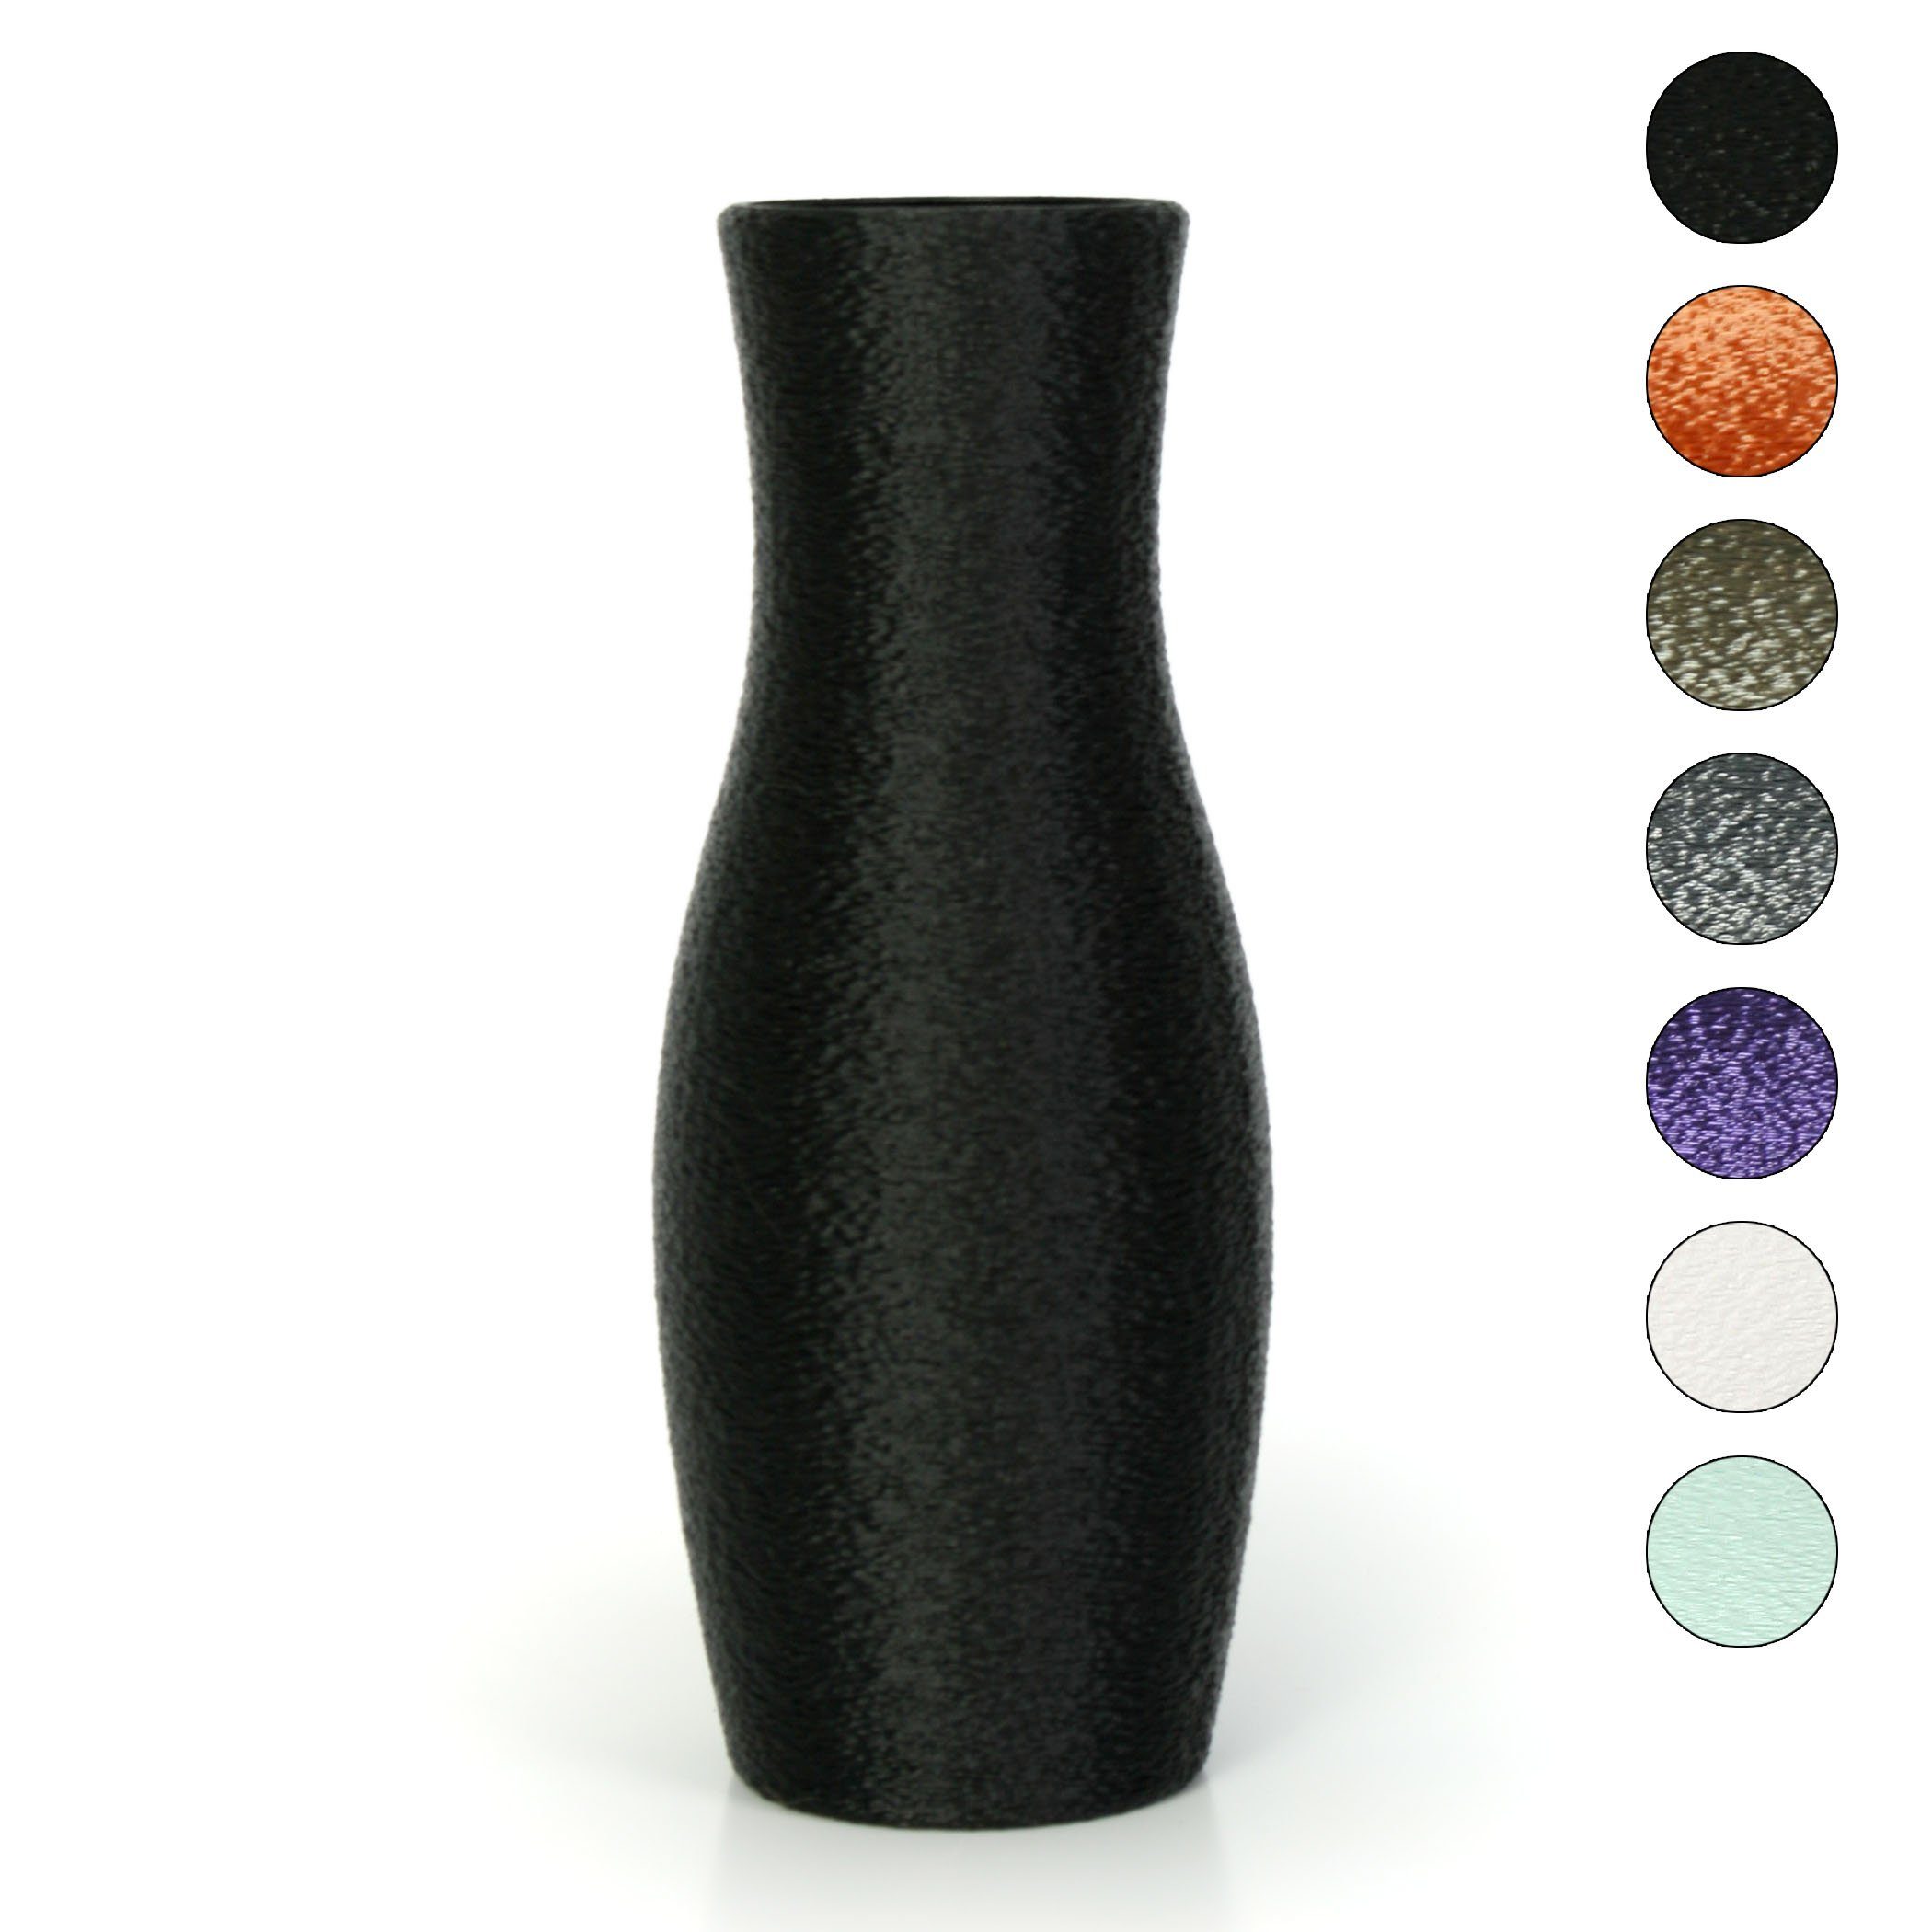 Kreative Feder Dekovase Designer Vase – Dekorative Blumenvase aus Bio-Kunststoff, aus nachwachsenden Rohstoffen; wasserdicht & bruchsicher Black | Dekovasen